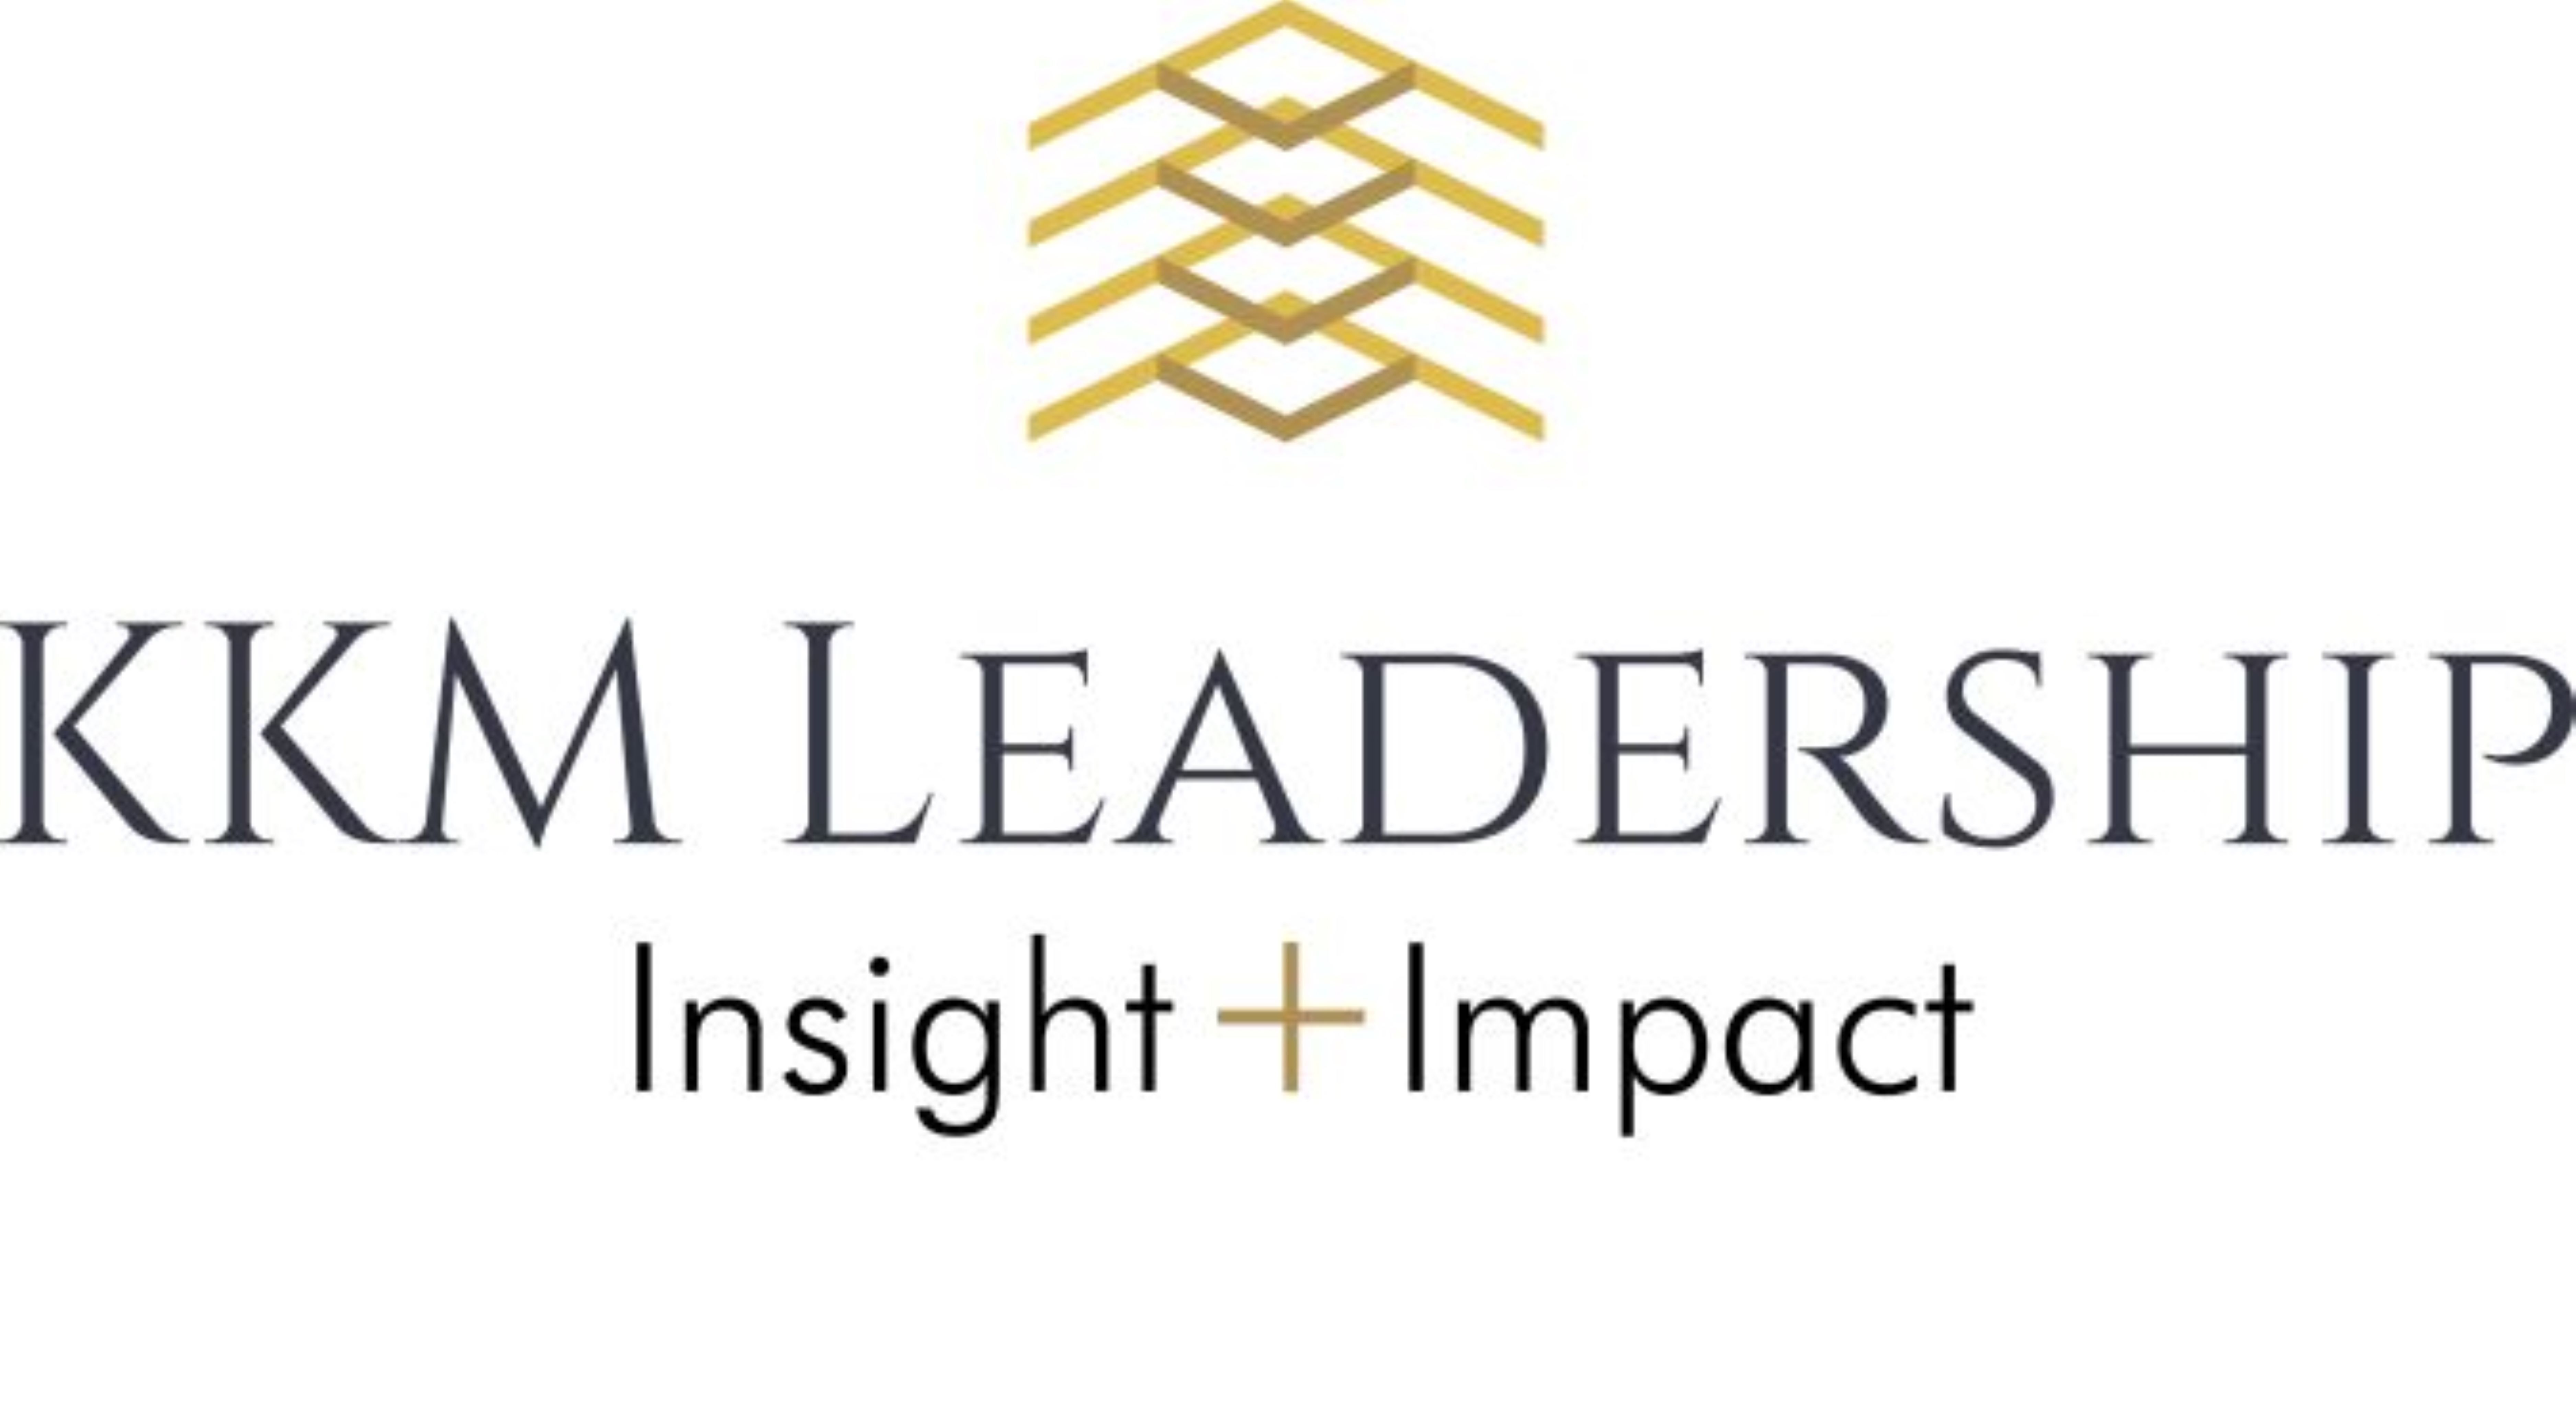 KKM Leadership, LLC